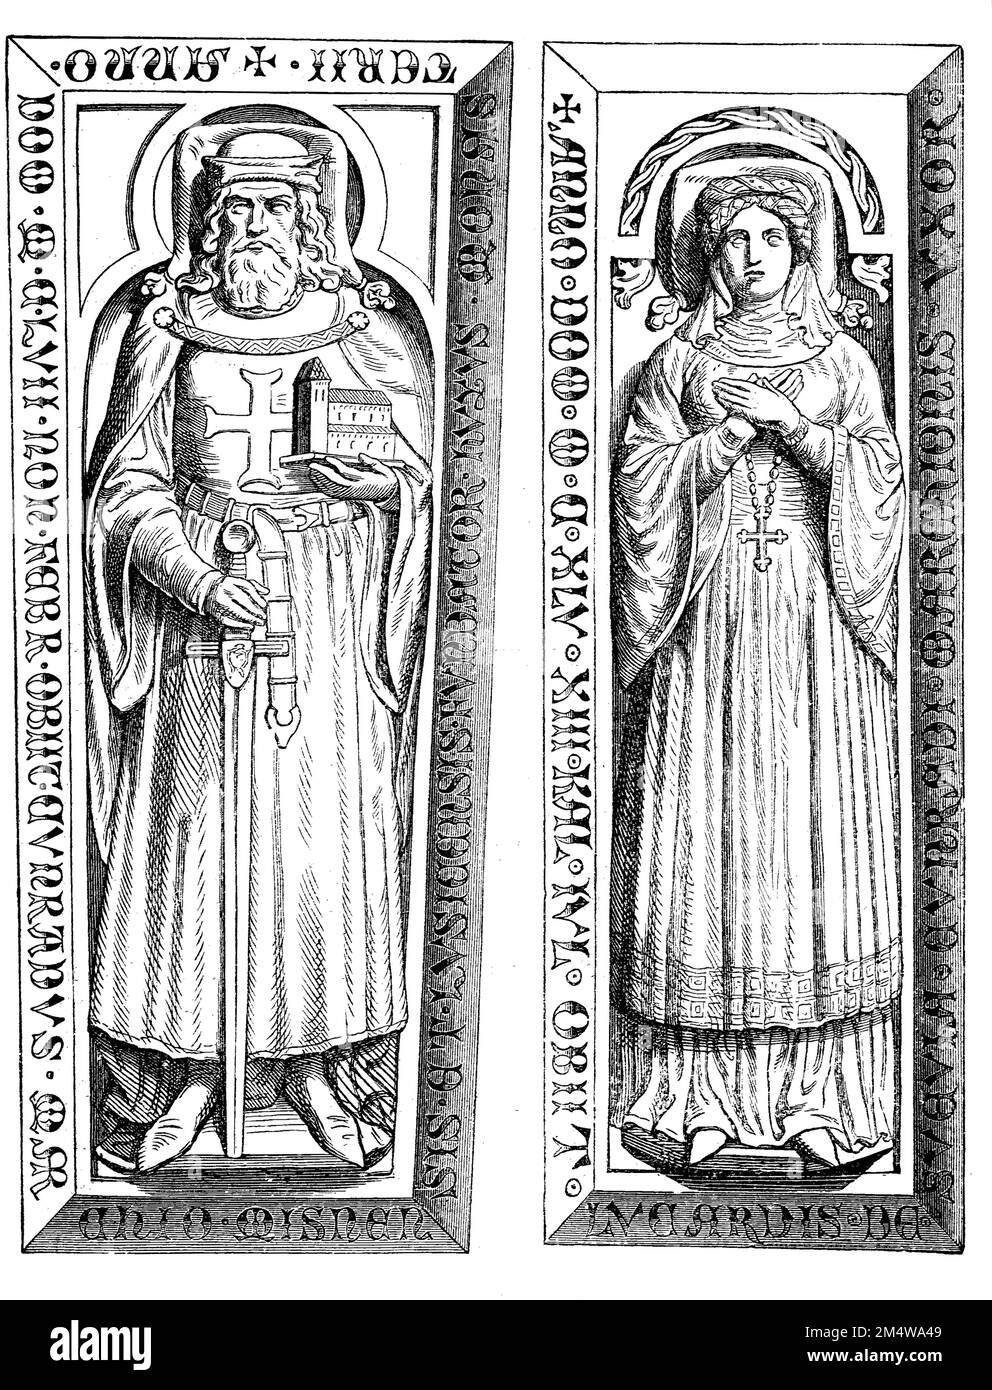 Konrad I. von Wettin und seine Gemahlin Luitgard von Ravenstein (um 1104 bis 19. Juni 1146, Markgraf Konrad von Meißen, genannt der Große oder der Fromme (* um 1098 bis 5. Februar 1157) war Graf von Wettin, ab 1123 Markgraf von Meißen und ab 1136 der Mark Lausitz, aus dem Adelsgeschlecht der Wettiner, Historisch, digital restaurierte Reproduktion von einer Vorlage aus dem 19. Jahrhundert / Konrad I. von Wettin und seine Frau Luitgard von Ravenstein (ca. 1104 bis 19. Juni 1146, Margrave Konrad von Meißen, genannt der große oder der fromme (* Ca. 1098 bis 5. Februar 1157) war Graf von Wettin, von 11 Stockfoto